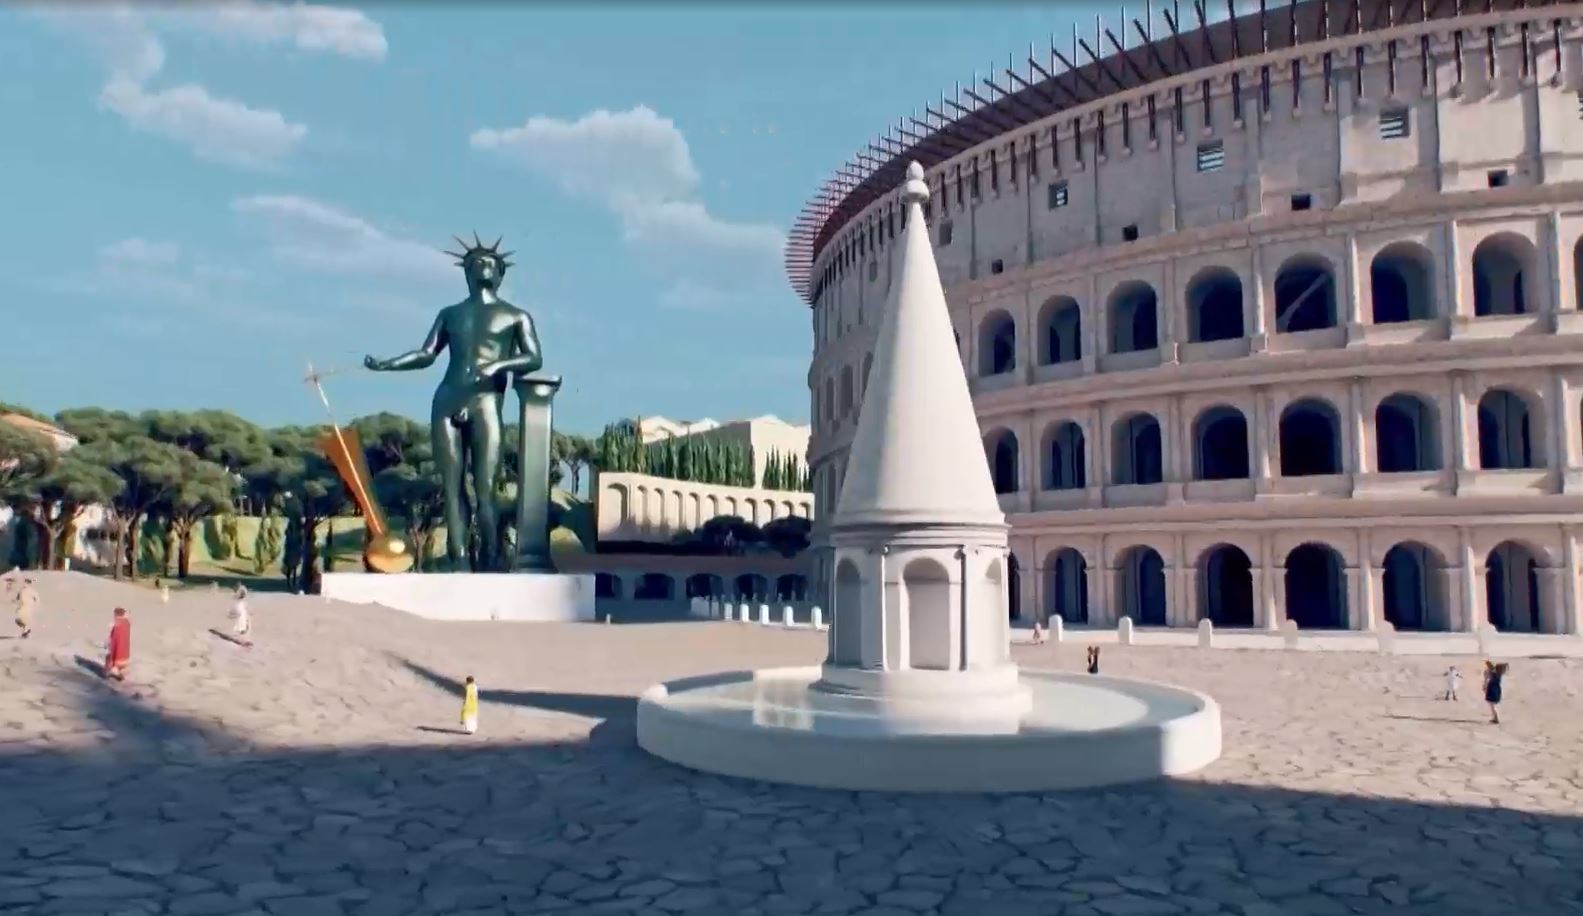 Εικονική πτήση δίνει μια γεύση από τη ζωή στην αρχαία Ρώμη - Δείτε βίντεο